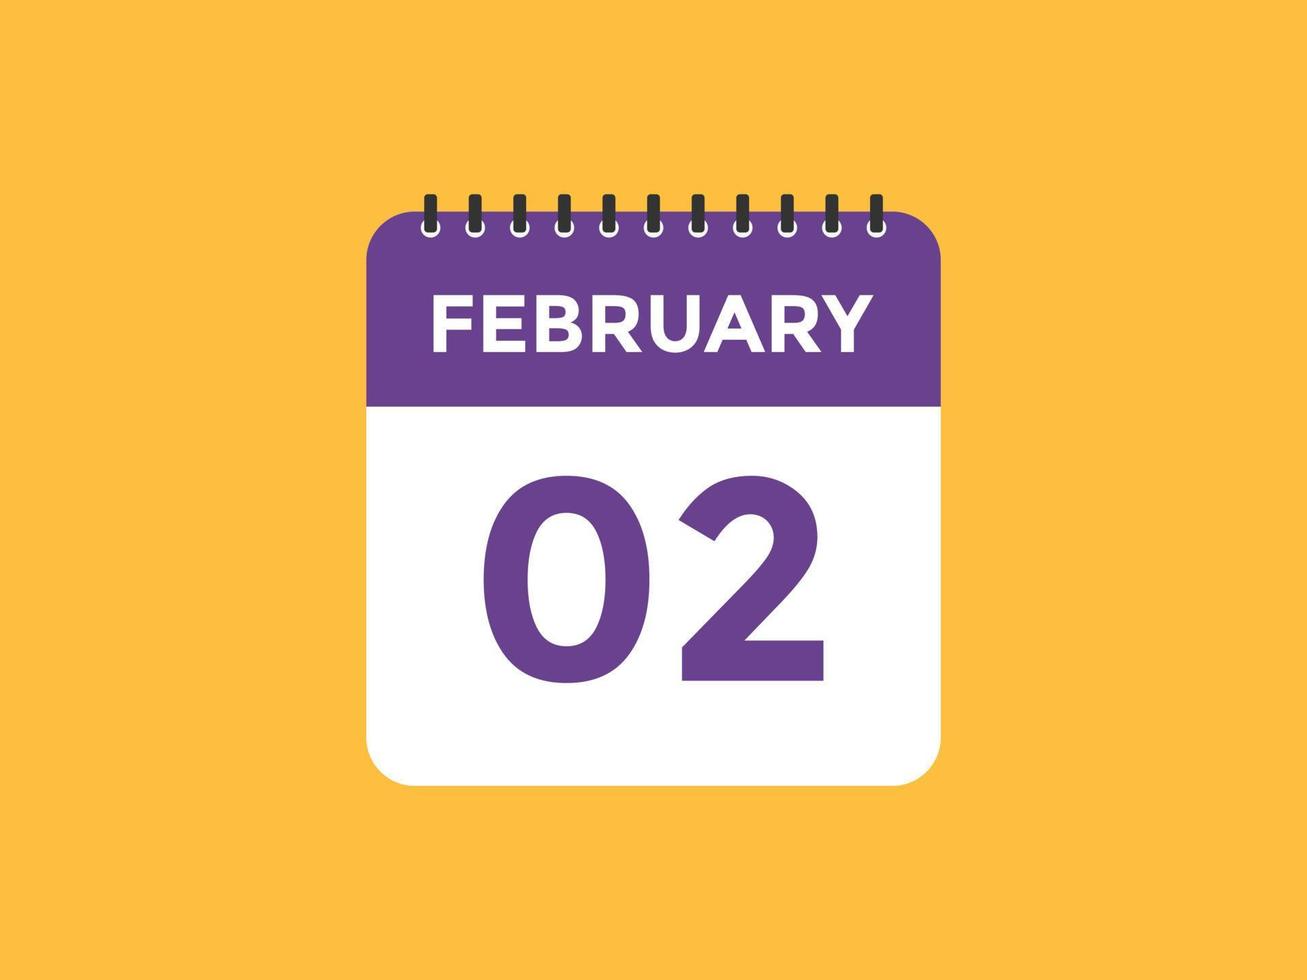 febbraio 2 calendario promemoria. 2 ° febbraio quotidiano calendario icona modello. calendario 2 ° febbraio icona design modello. vettore illustrazione